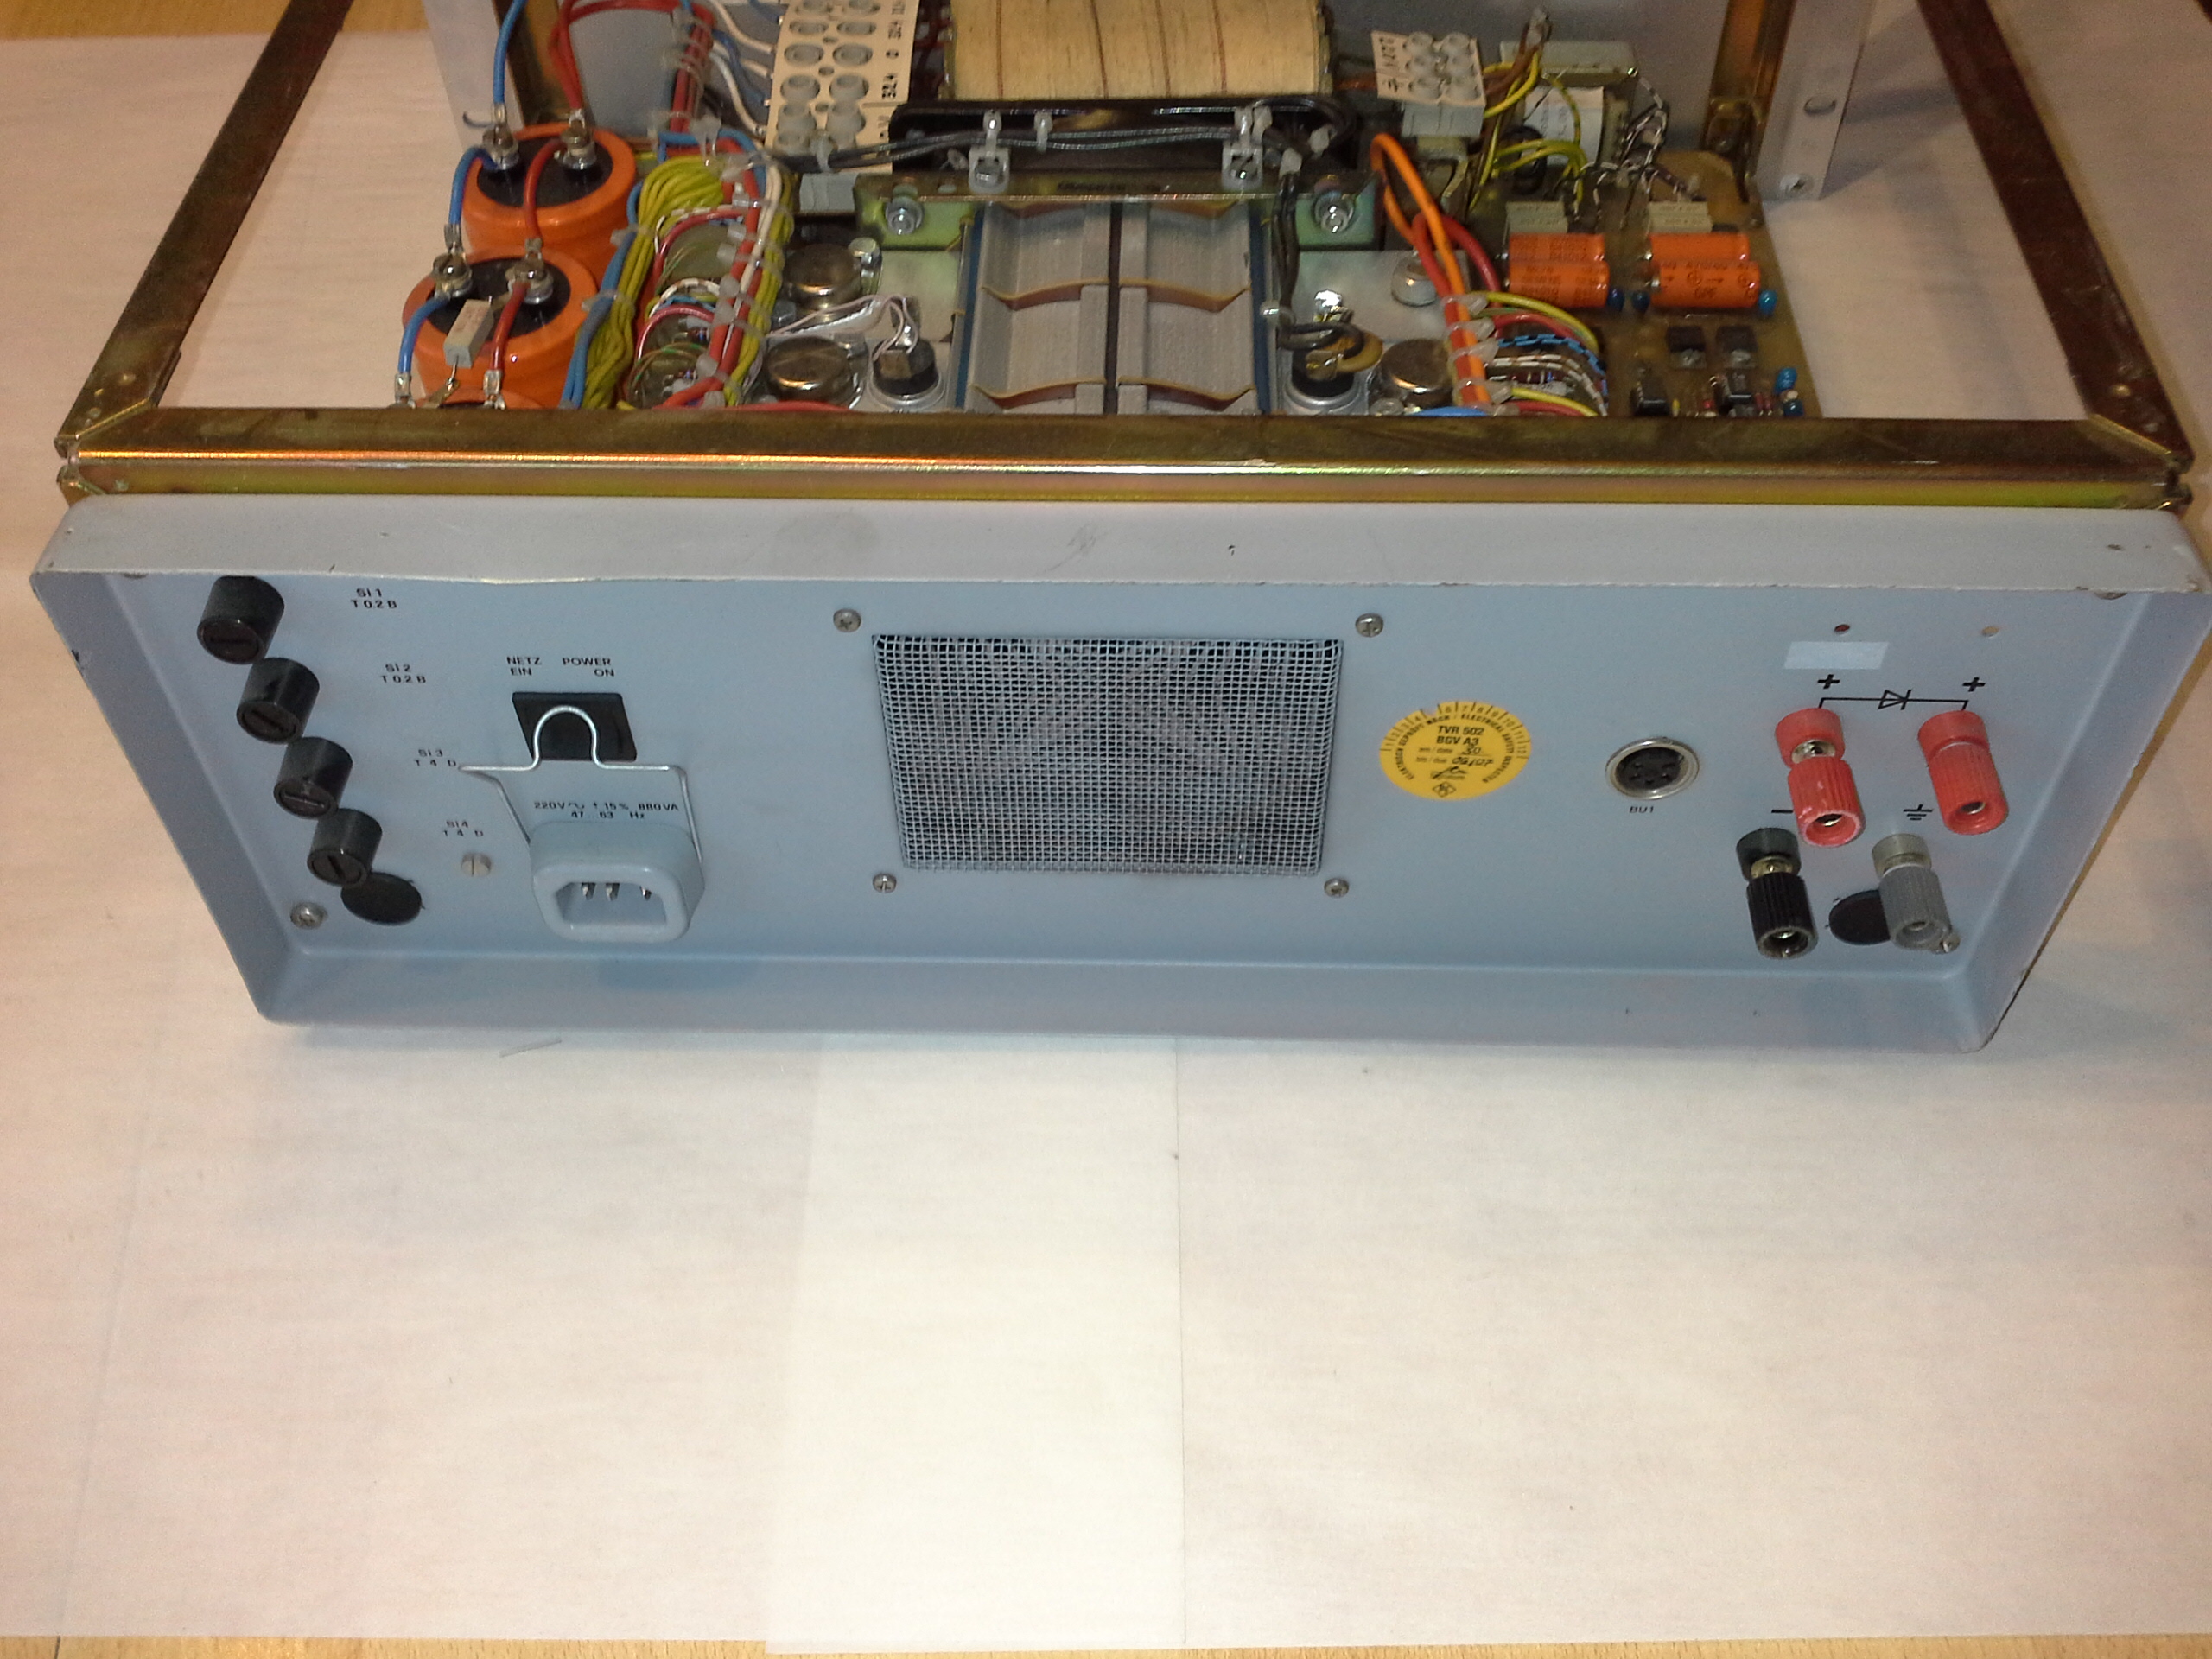 Rohde &amp; Schwarz Stromversorgungsgerät DC-Power Supply Typ IN O25